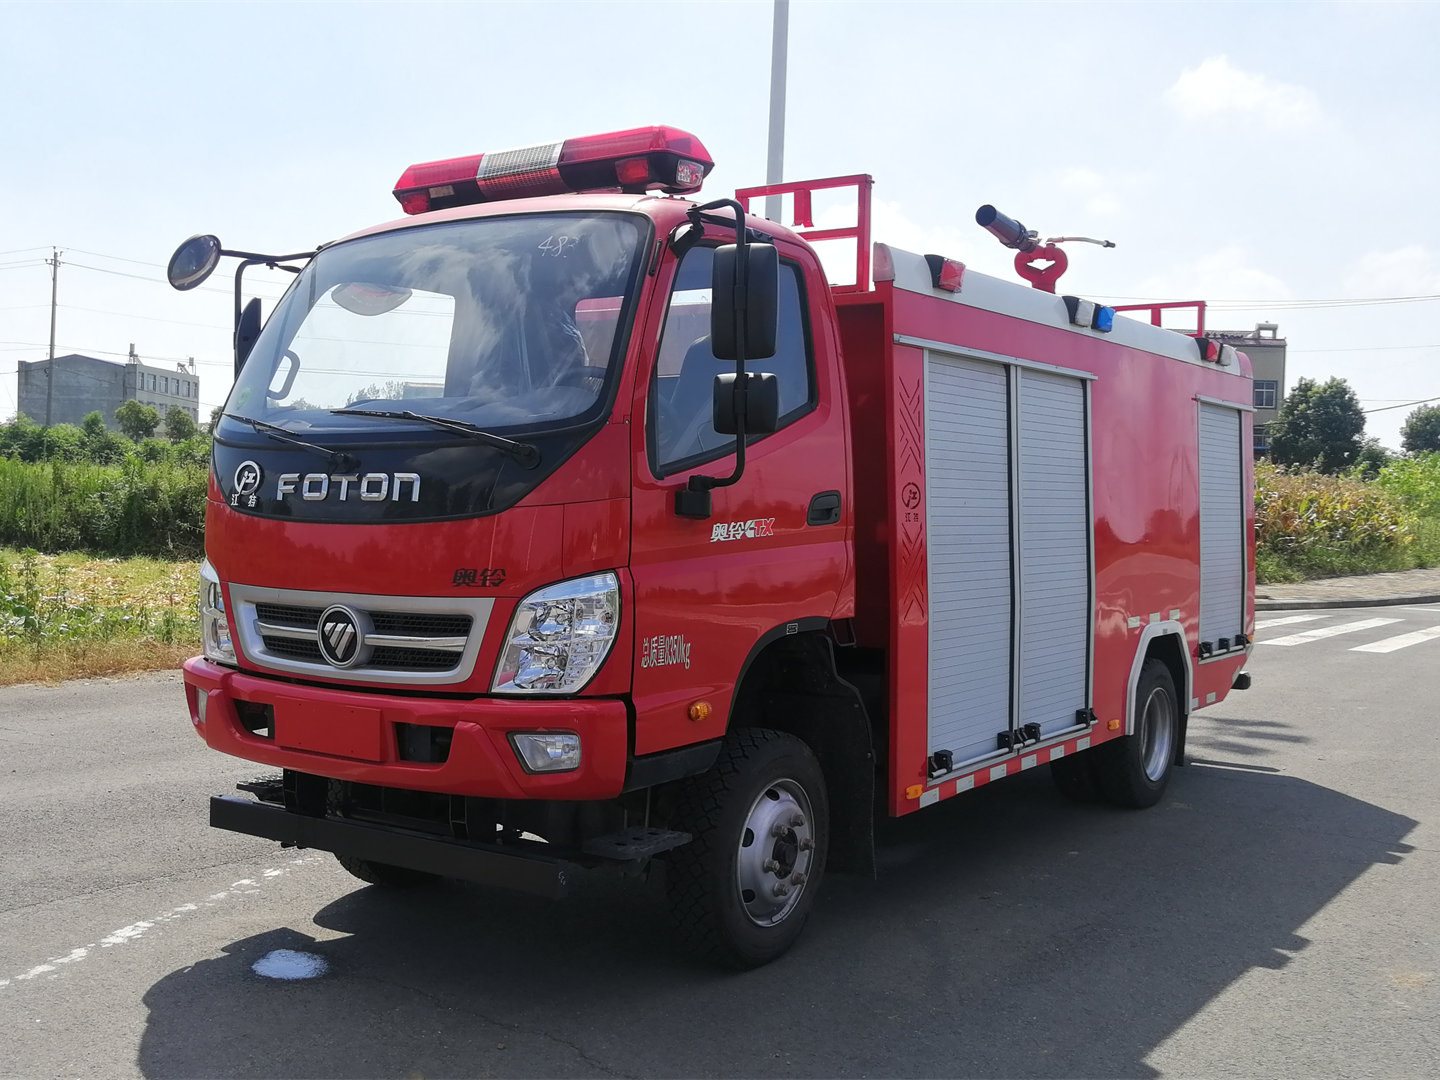 福田2.5吨水罐消防车